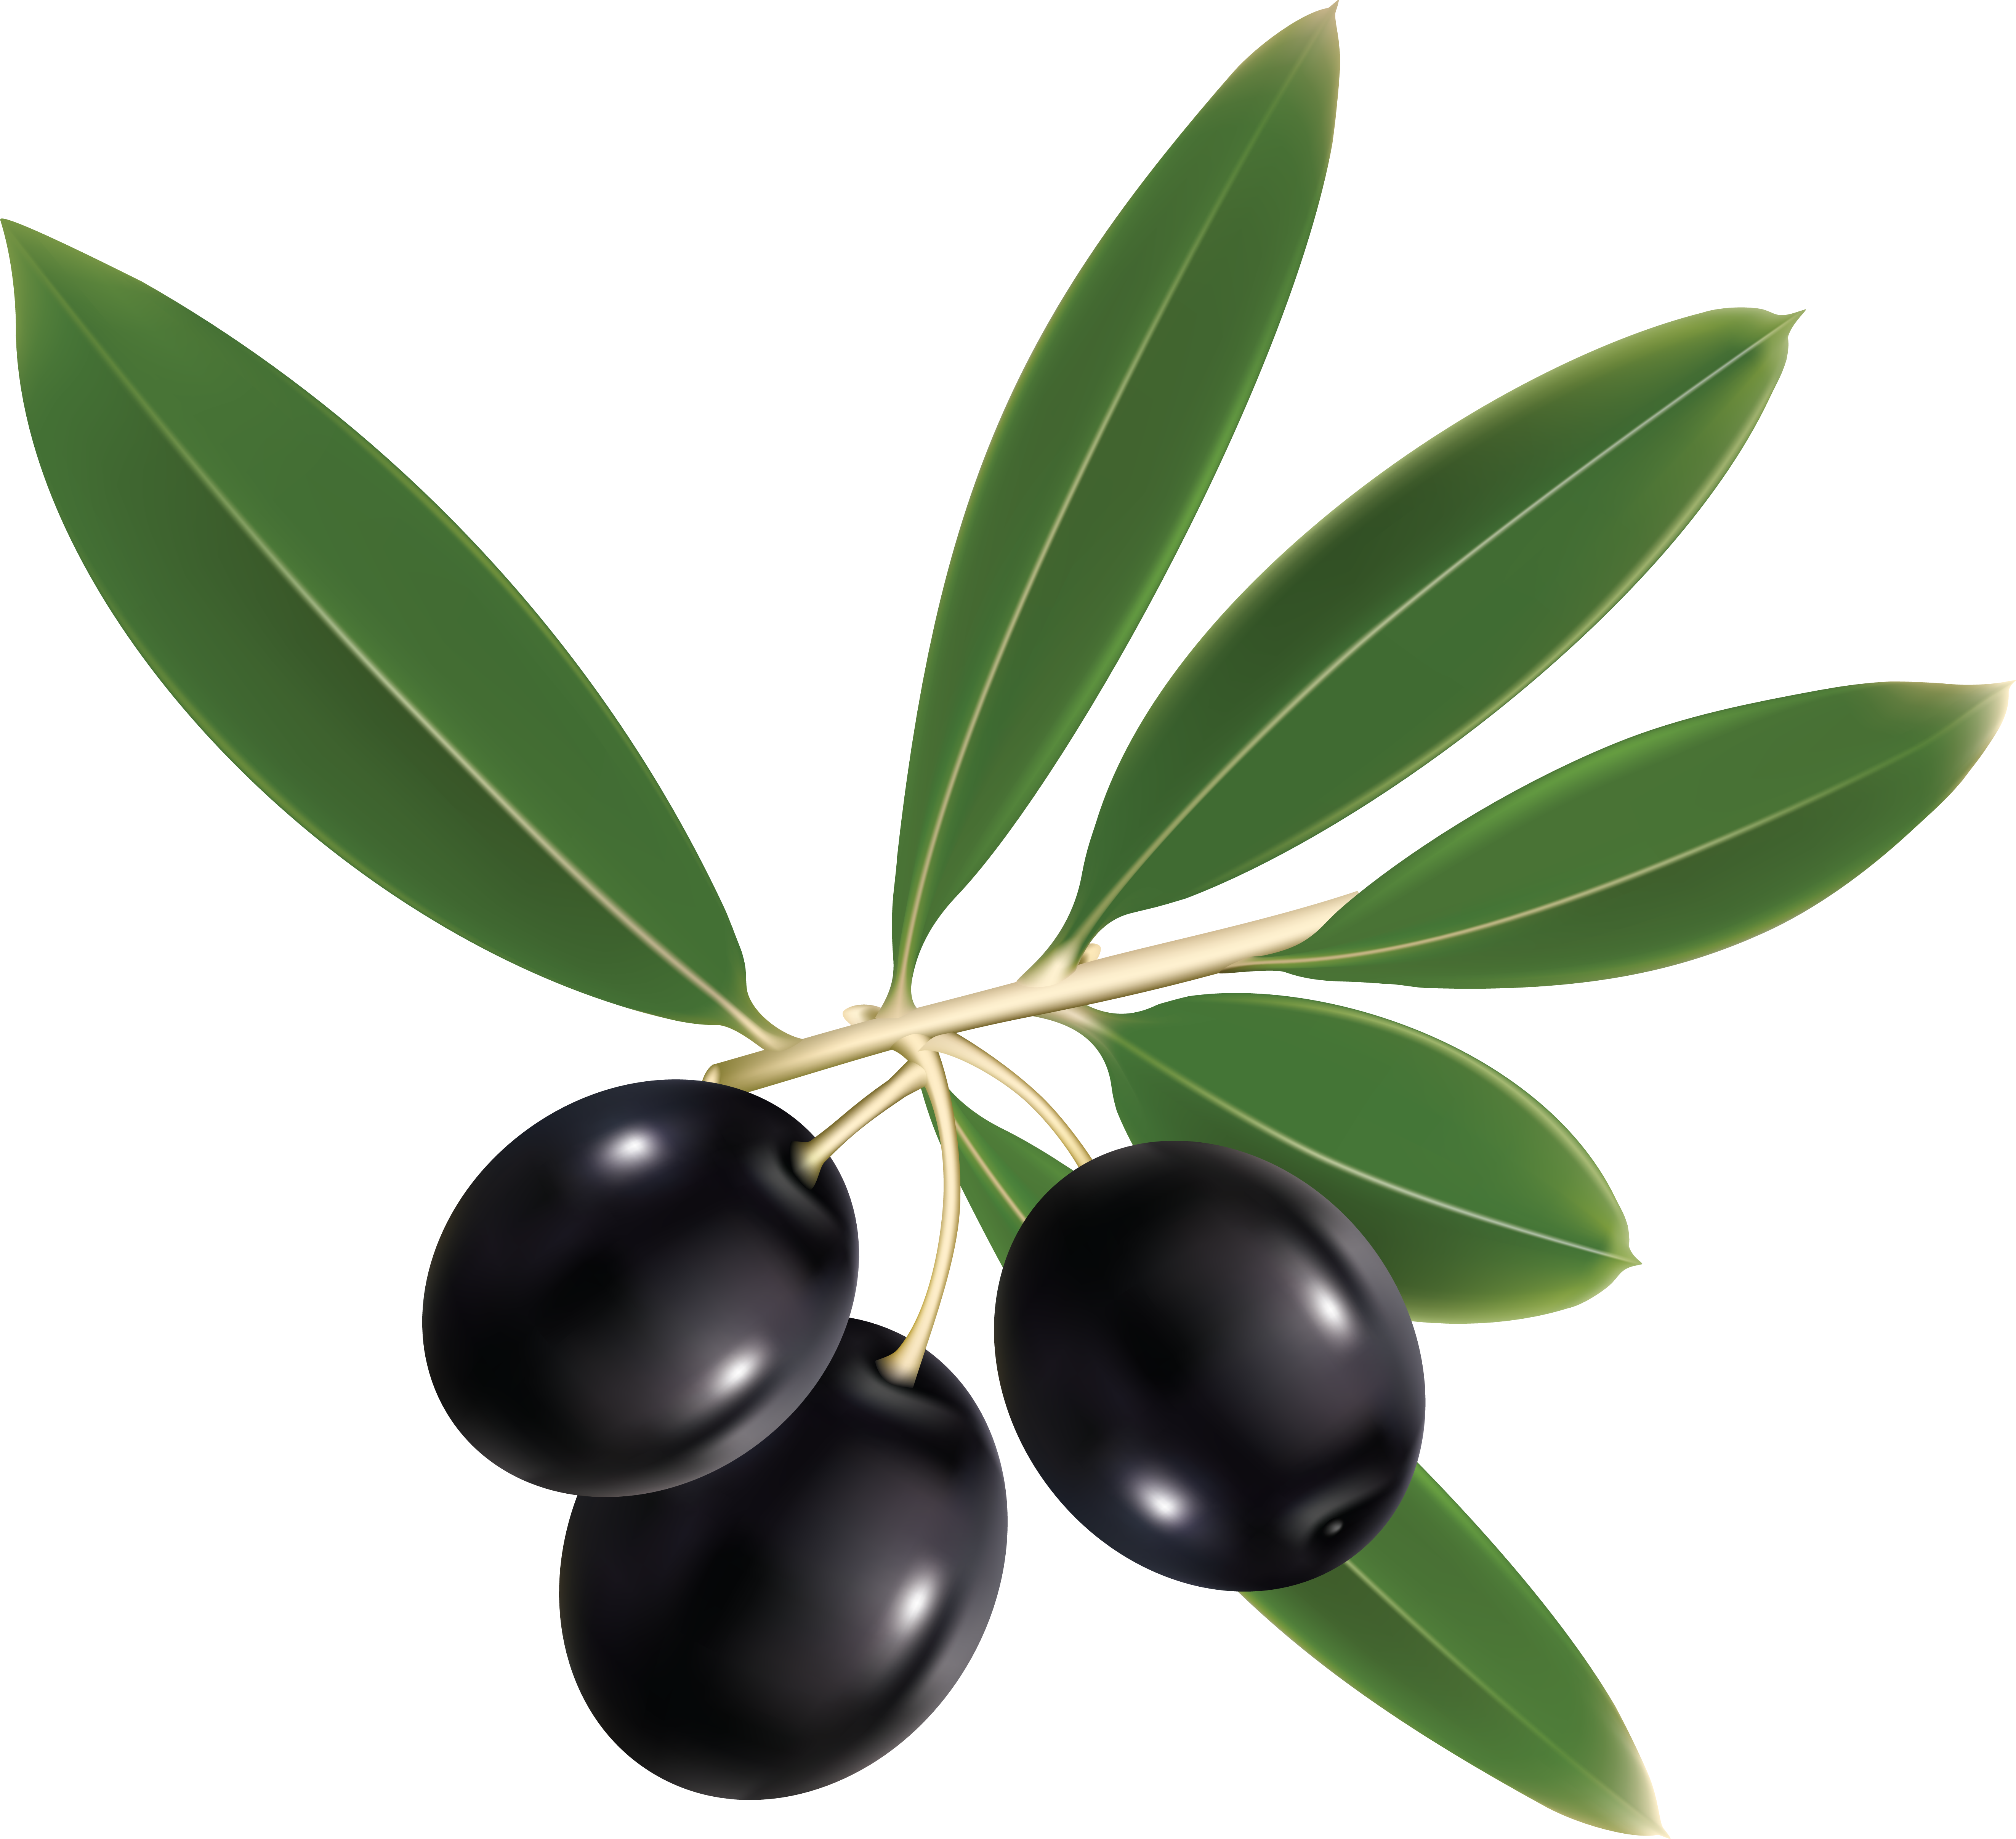 Olives PNG Image